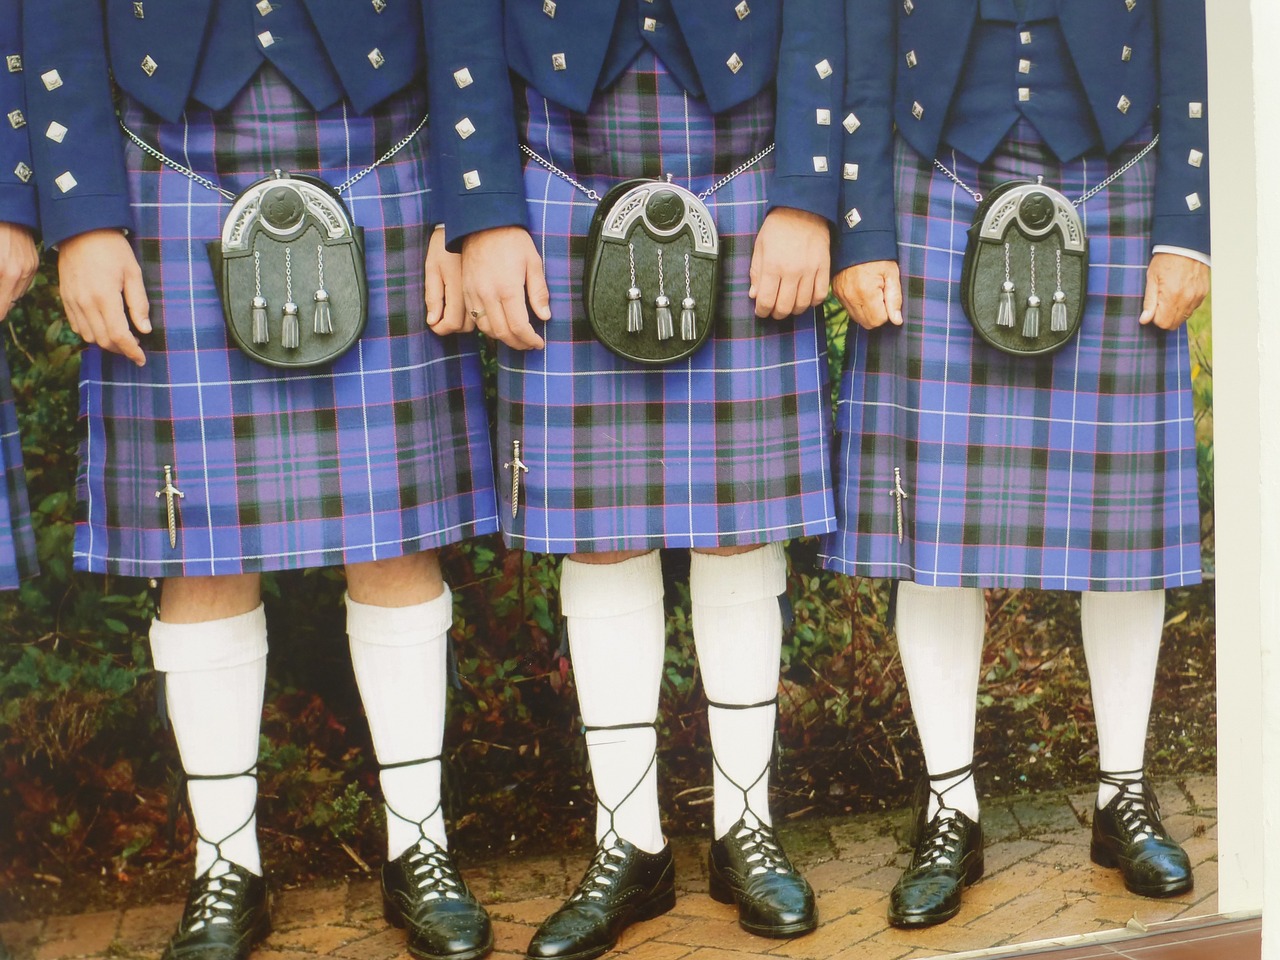 Kilt je tradičný škótsky odev.